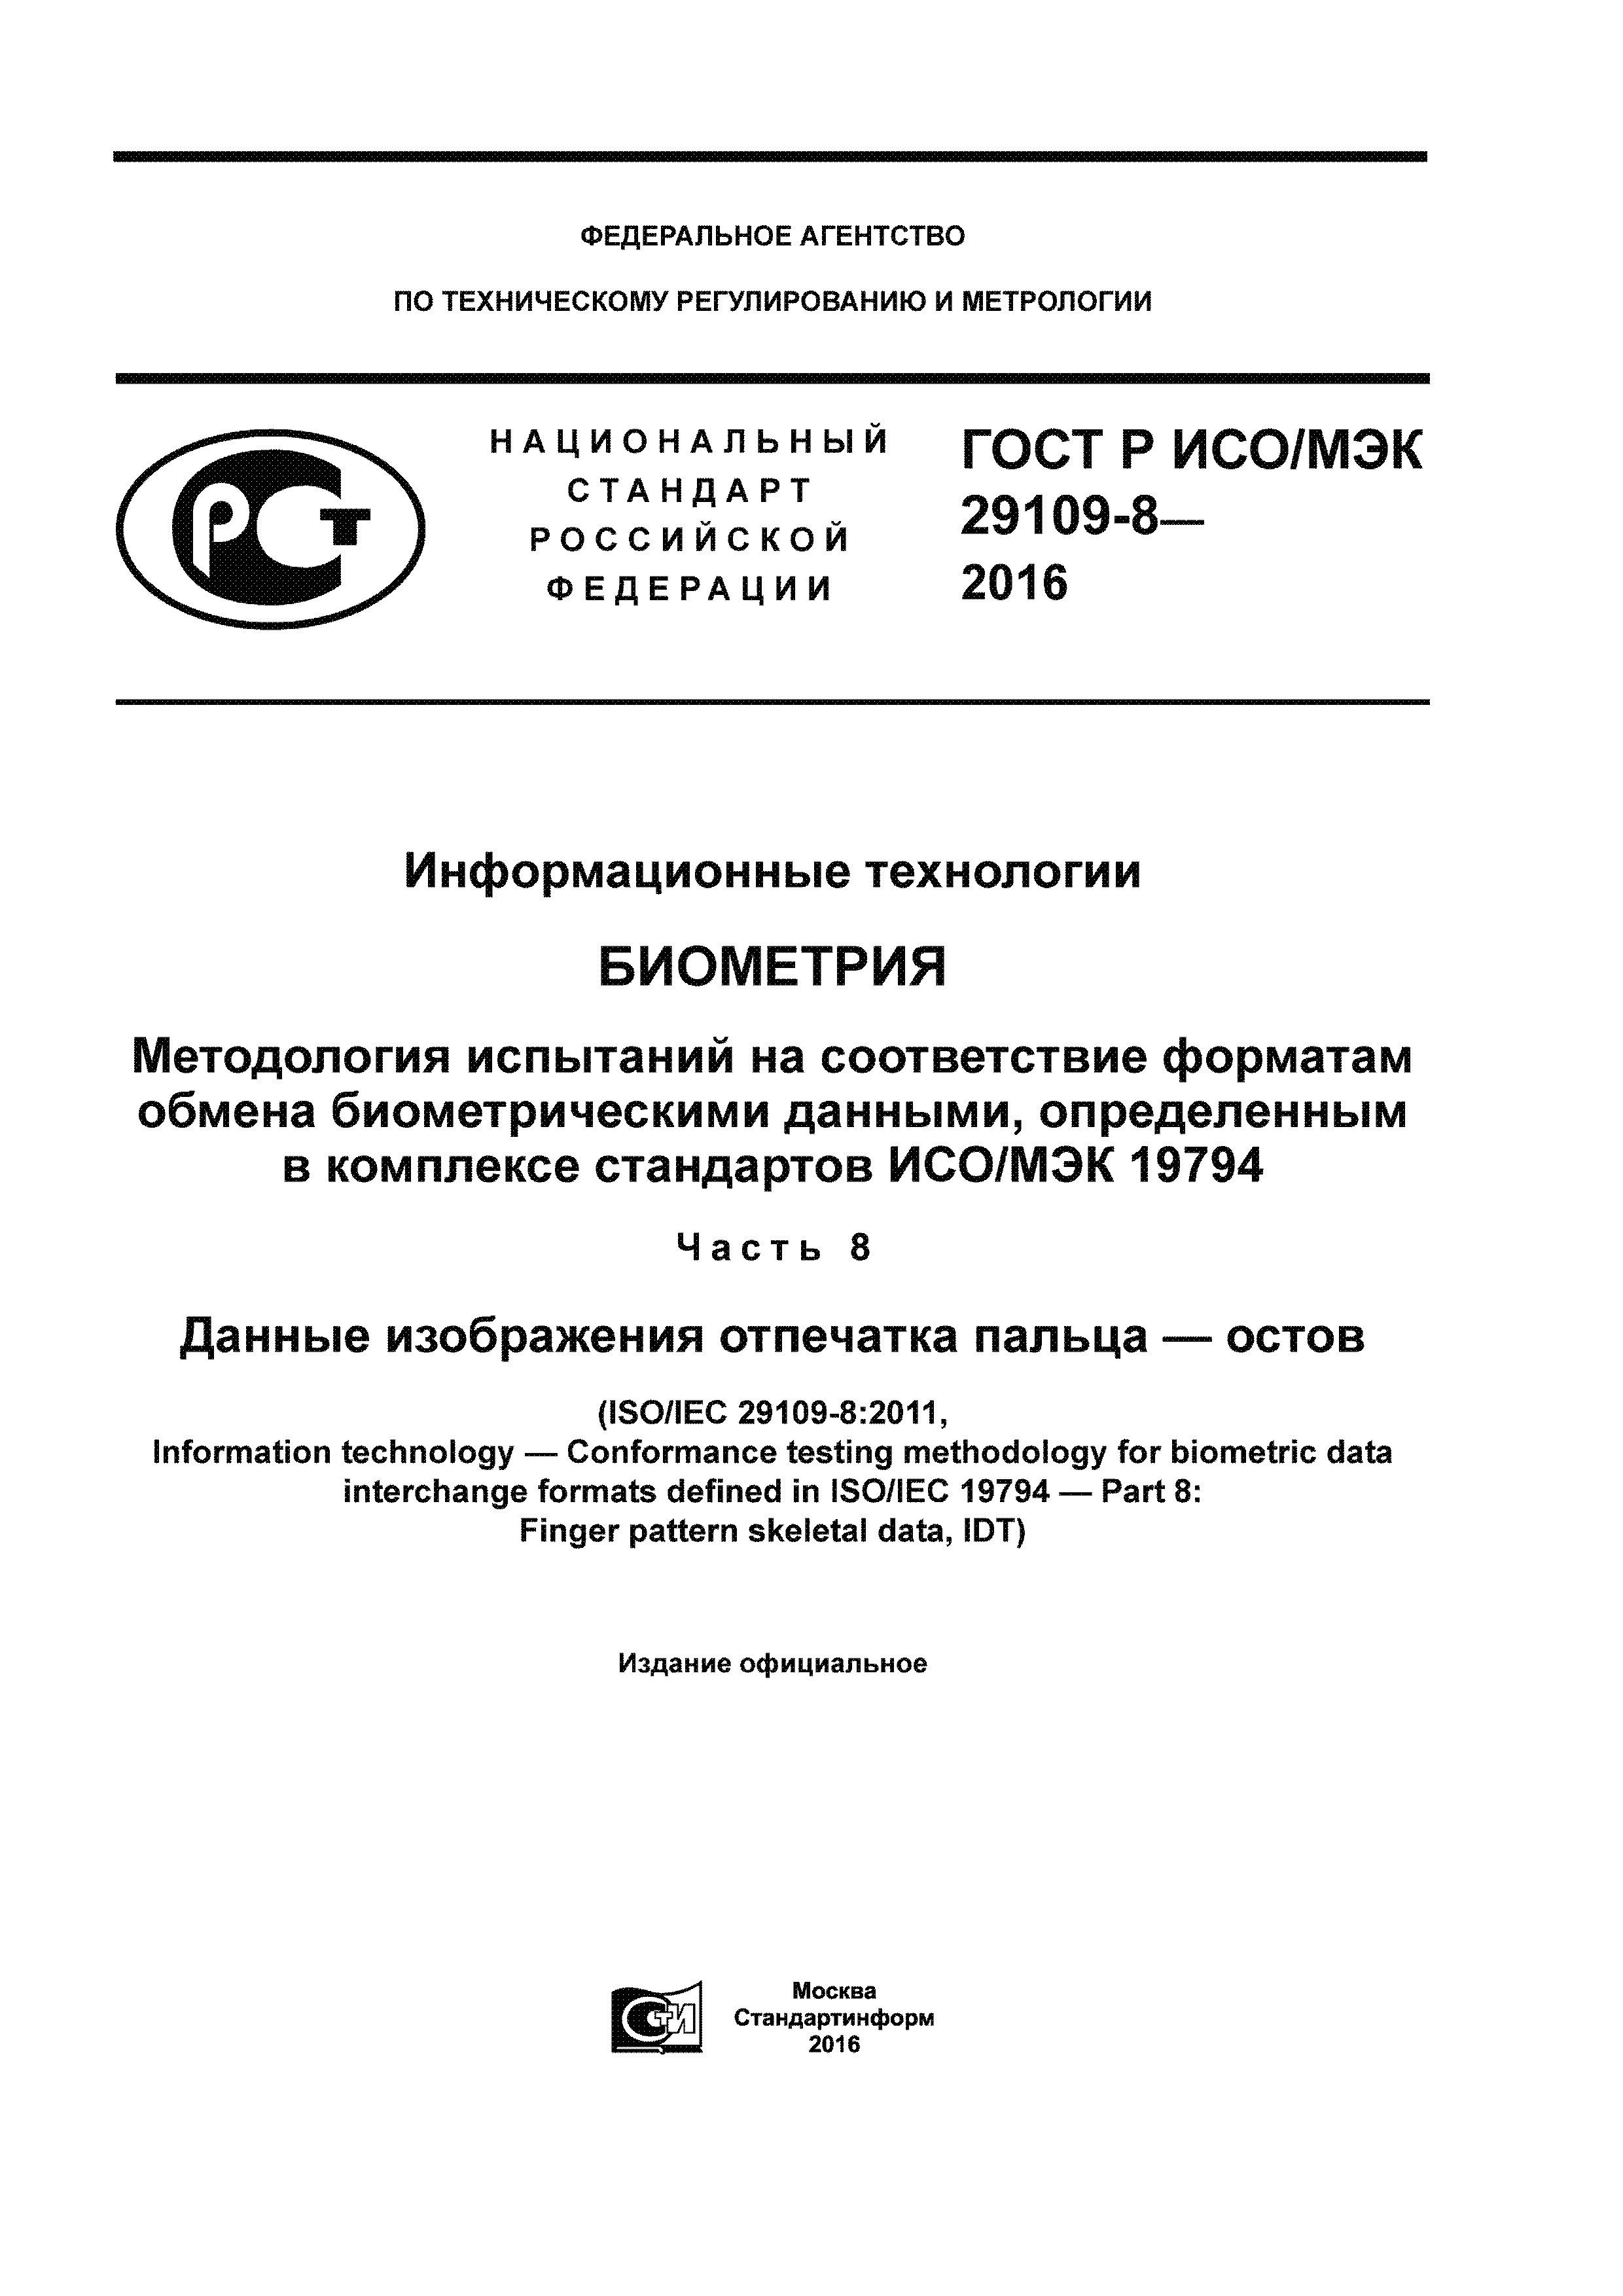 ГОСТ Р ИСО/МЭК 29109-8-2016